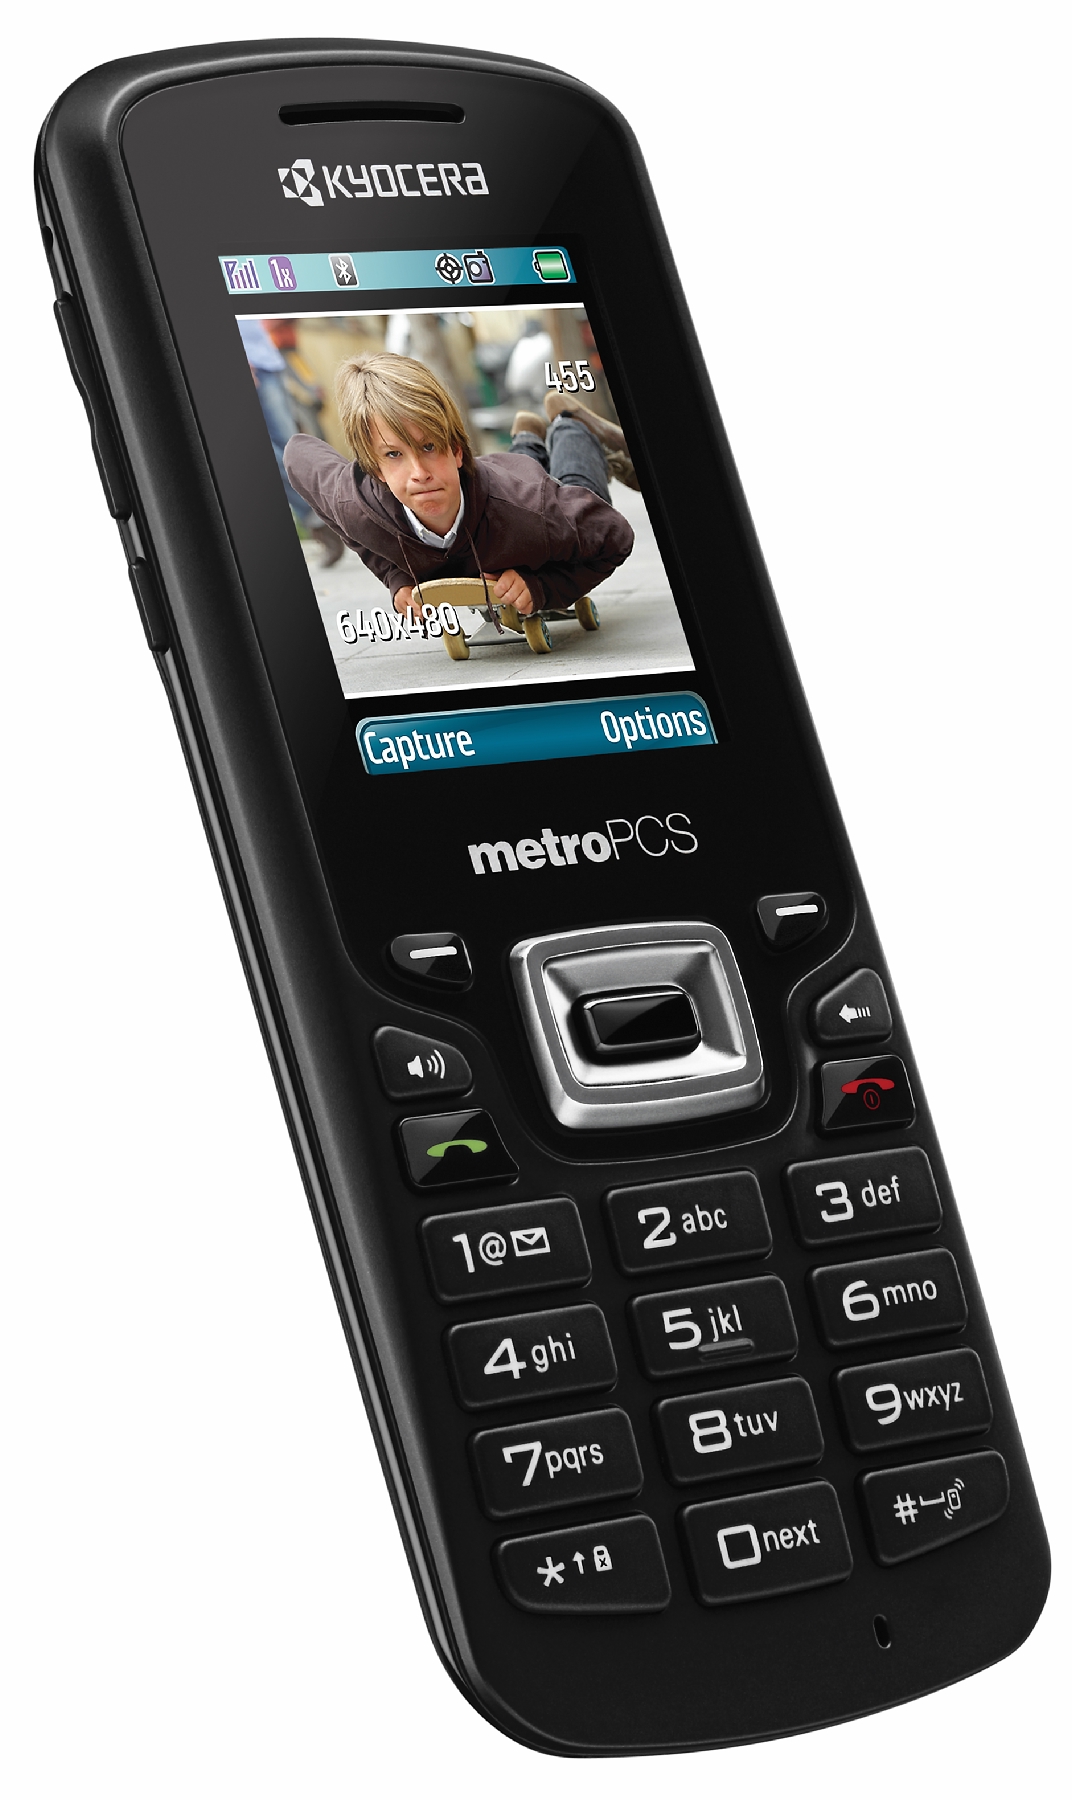 Kyocera PRESTO Cell Phone